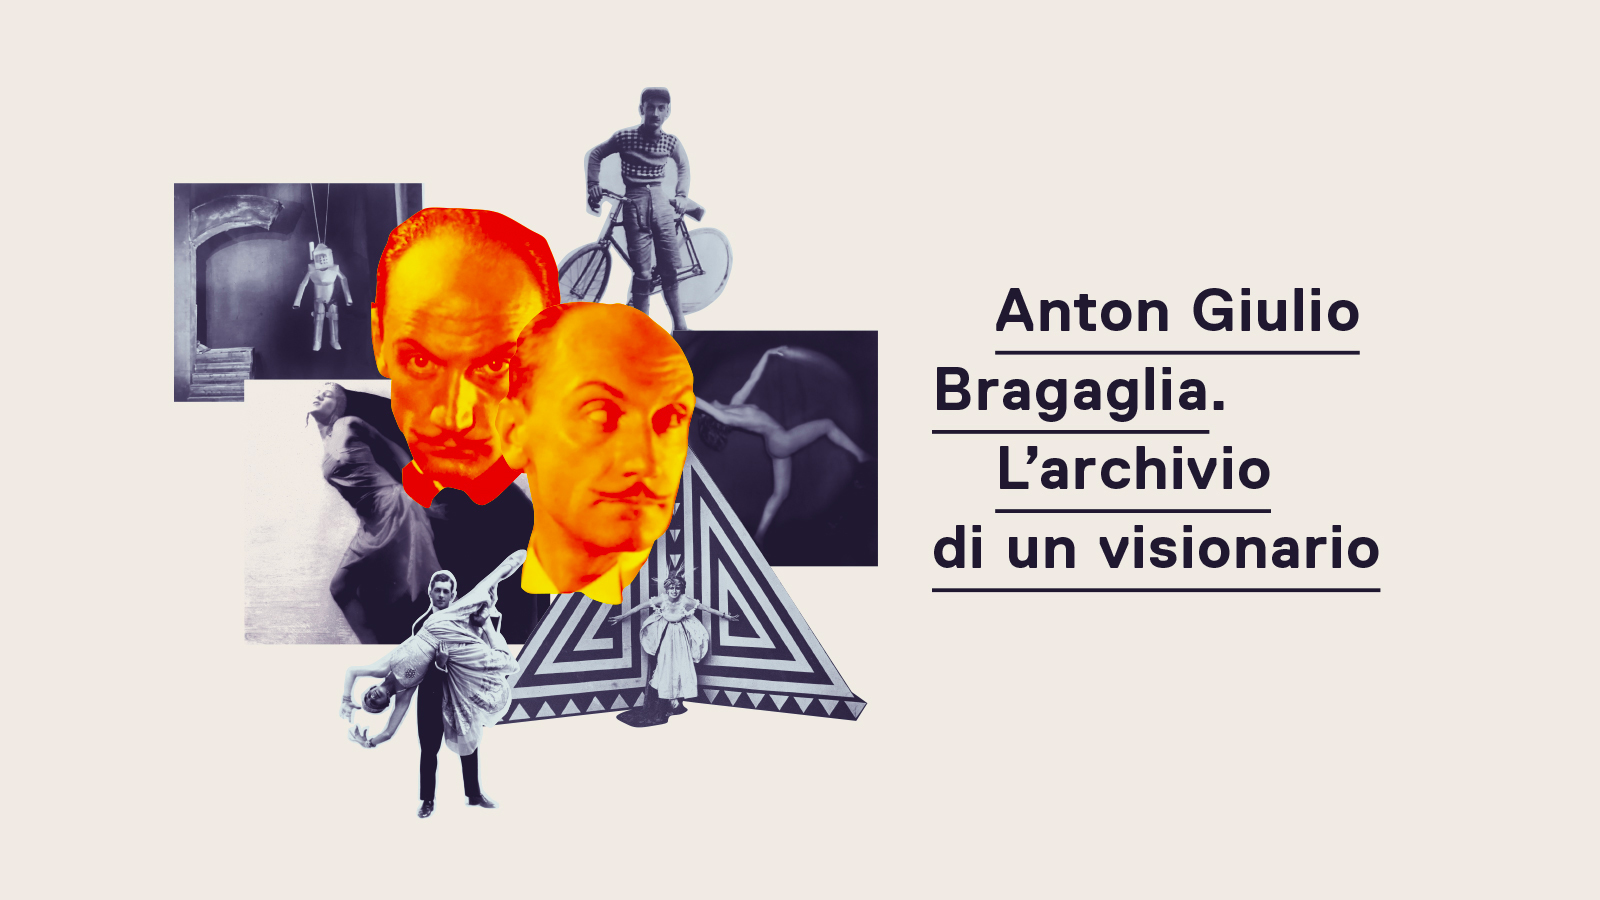 Anton Giulio Bragaglia. L’archivio di un visionario